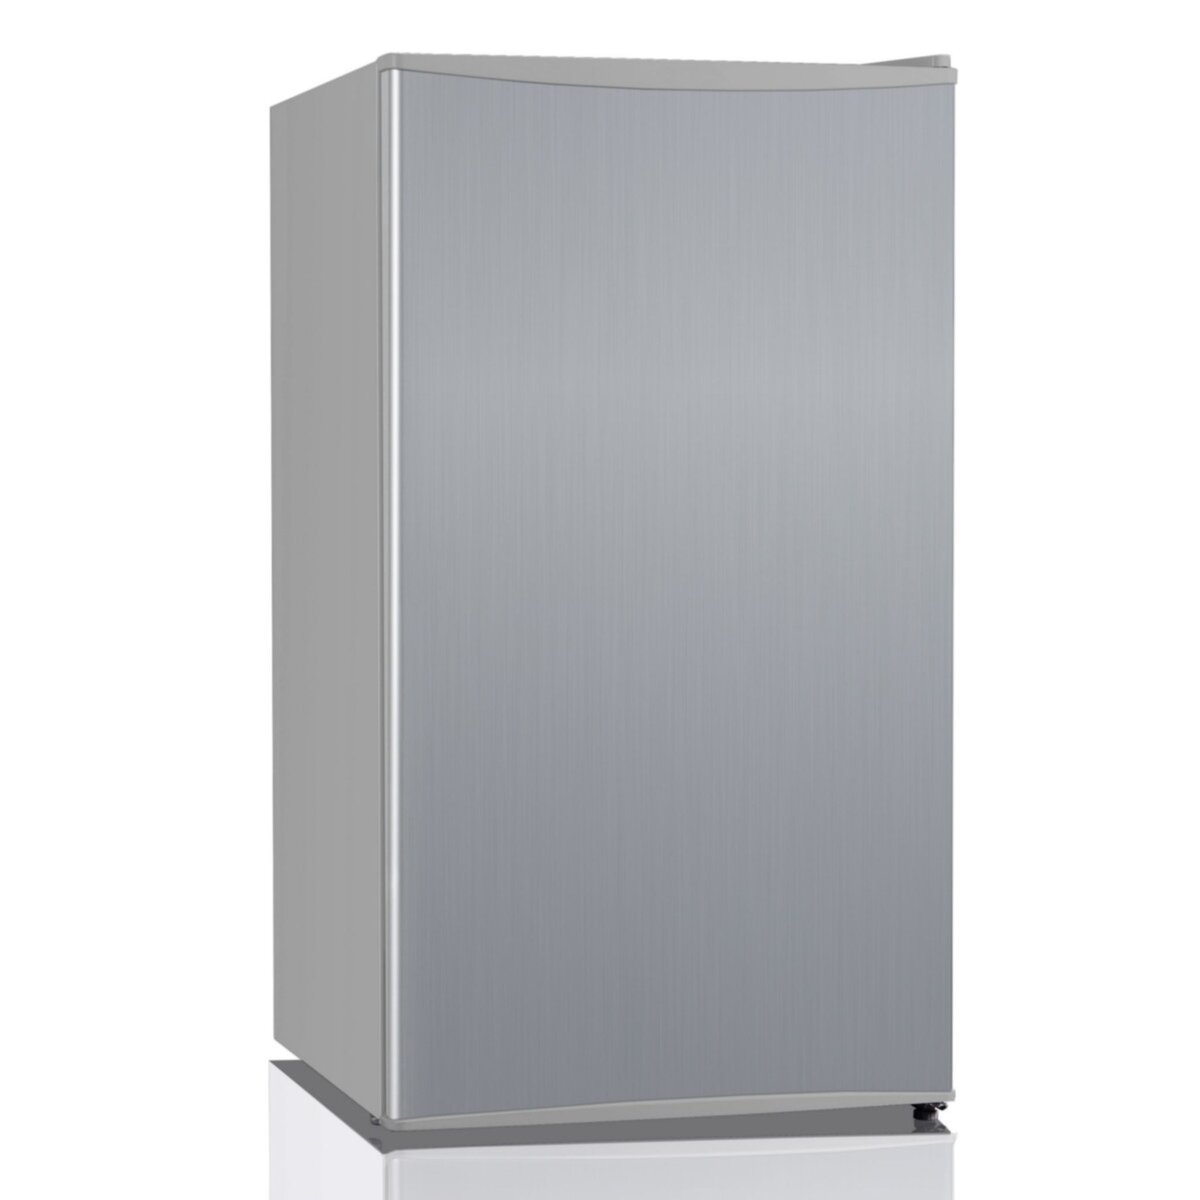 SELECLINE Réfrigerateur table top HS121LN, 93 L